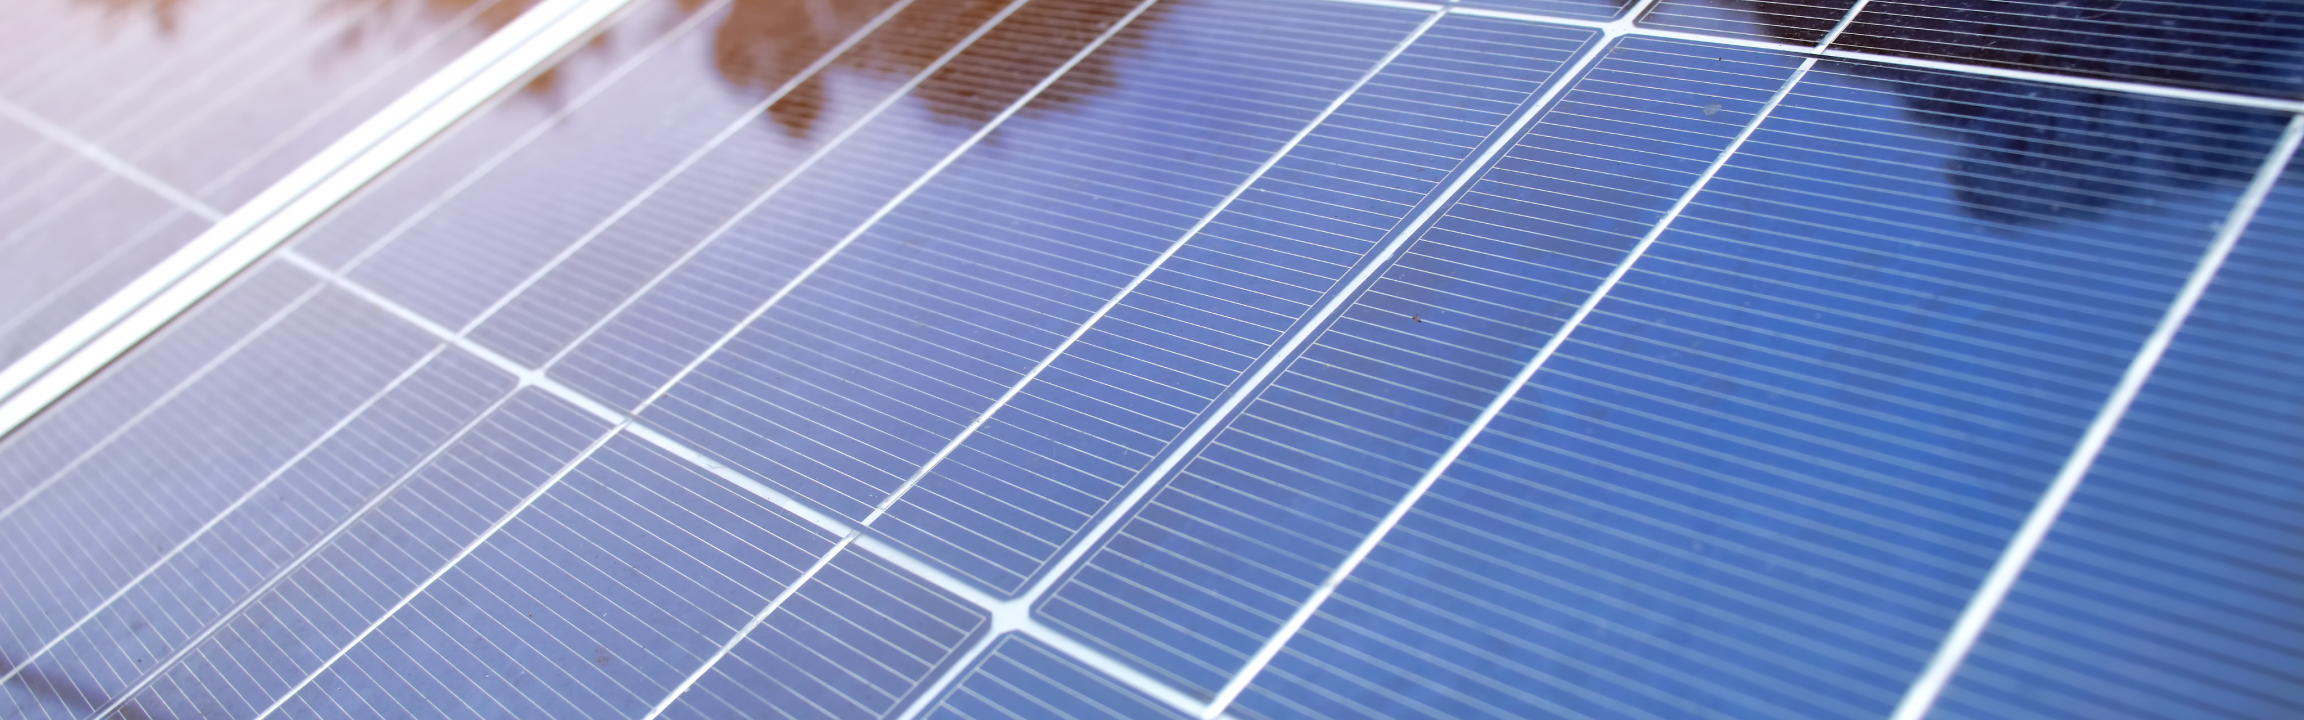 NEWSOL - projeto de armazenamento térmico para centrais de energia solar, com participação da Secil